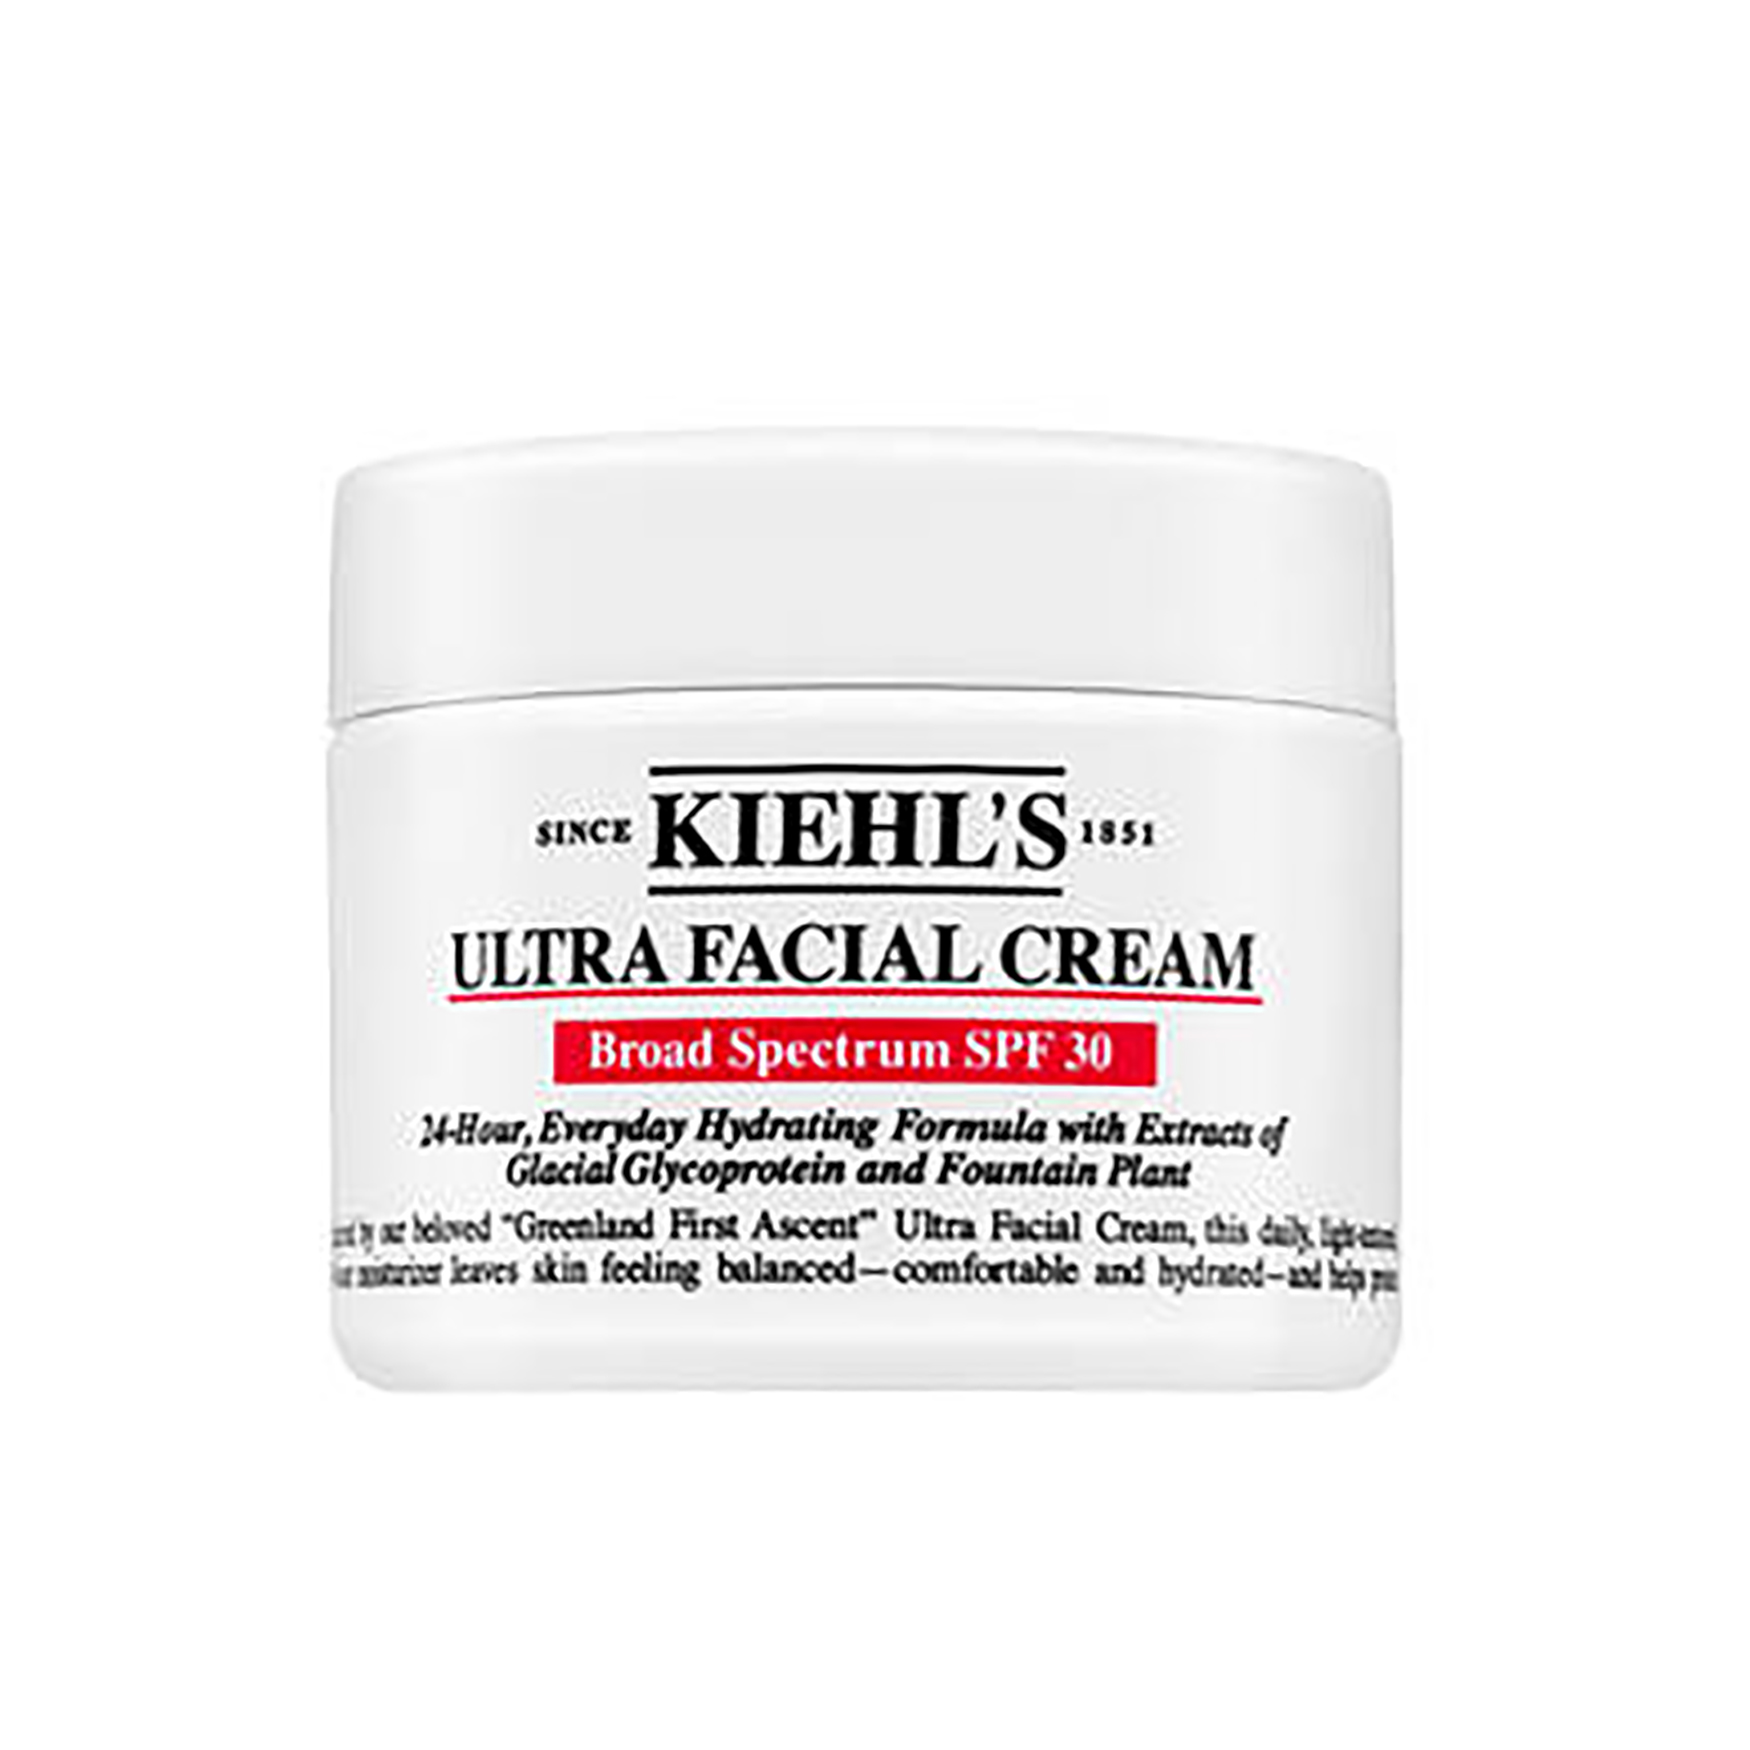 Kiehl's Ultra Facial Cream SPF 30 | Space NK